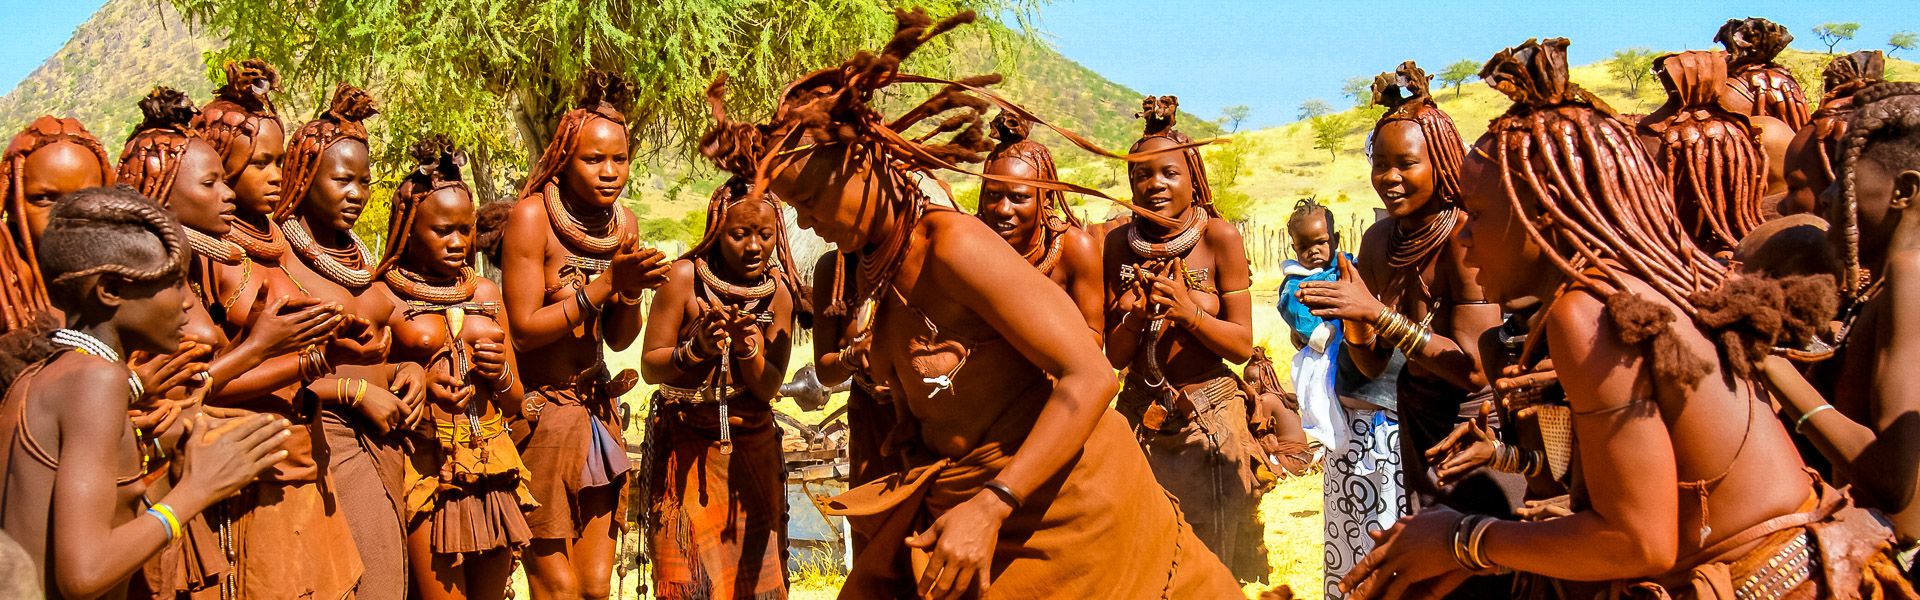 Tanz der Himba-Frauen |  Elke Jatzkowski / Chamleon